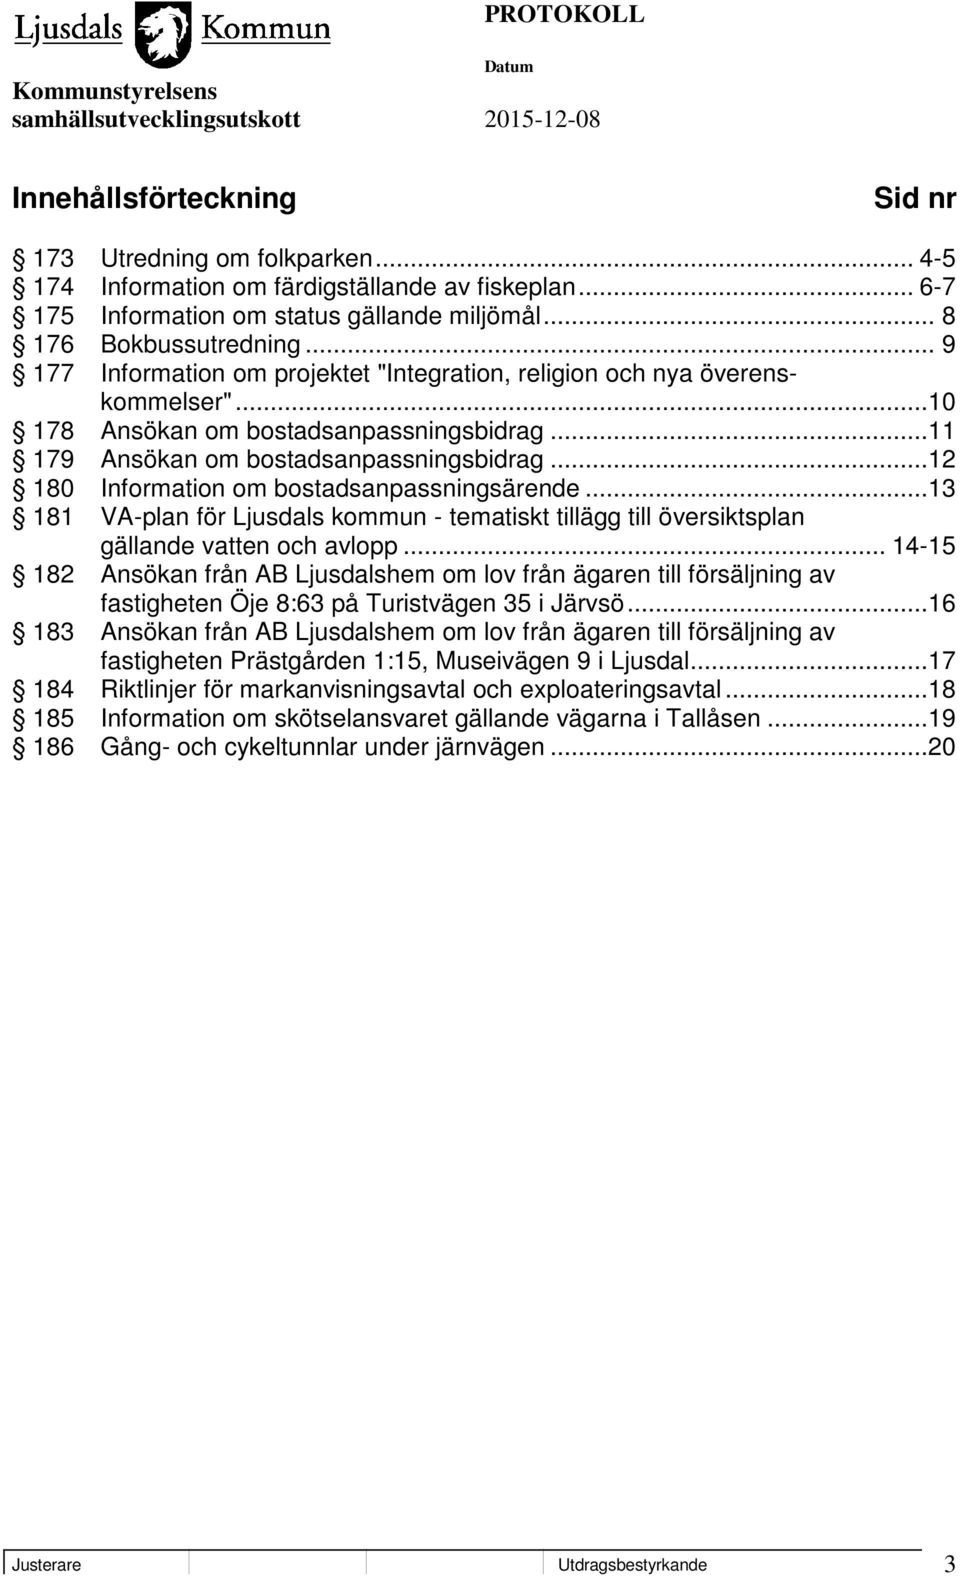 ..12 180 Information om bostadsanpassningsärende...13 181 VA-plan för Ljusdals kommun - tematiskt tillägg till översiktsplan gällande vatten och avlopp.